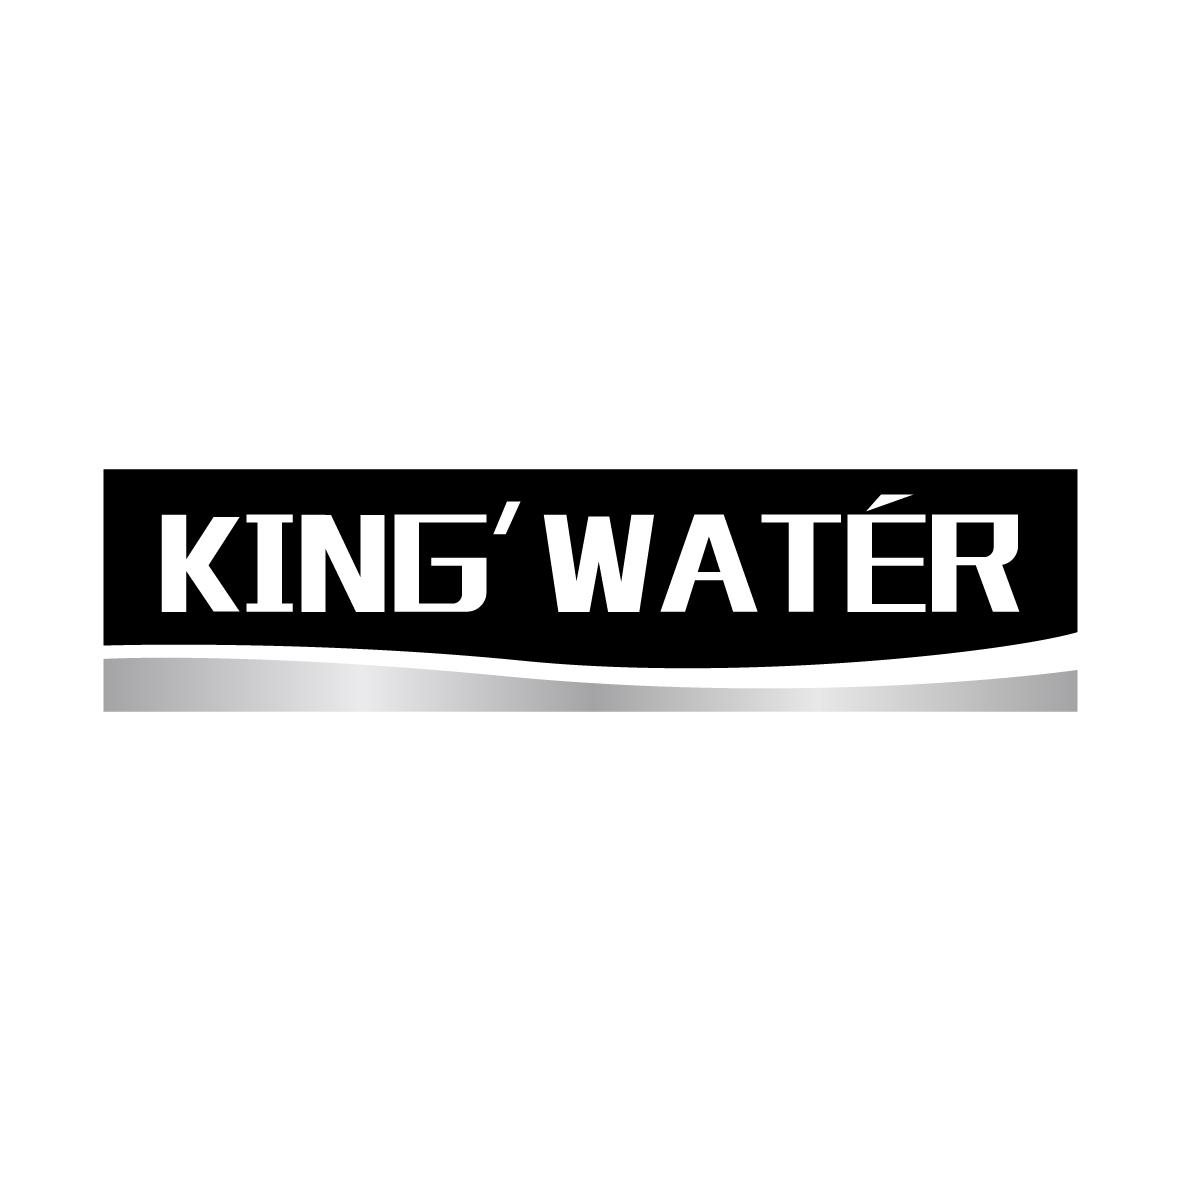 KING'WATER